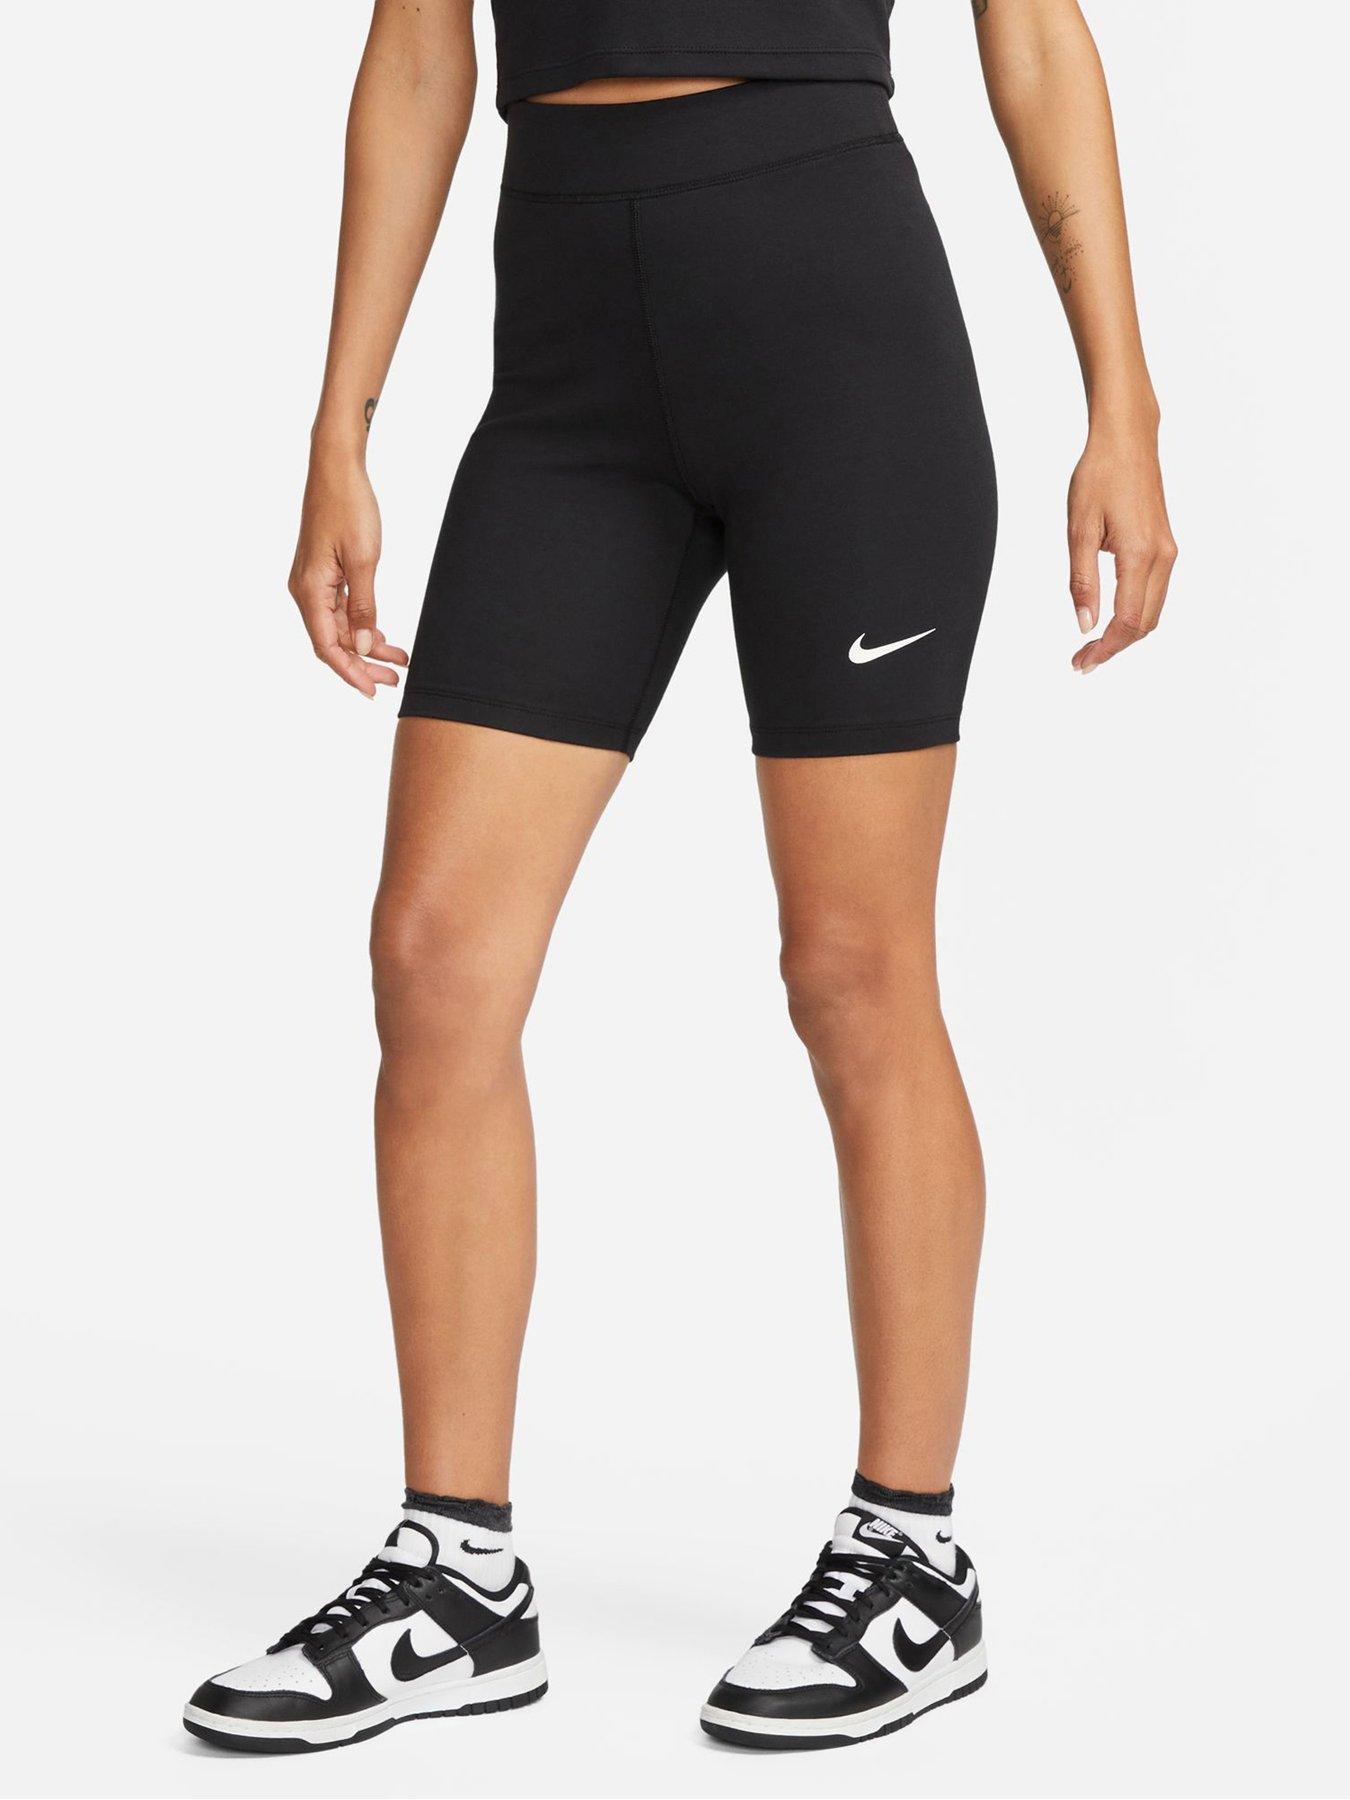 Shorts, Sportswear, Women, Nike